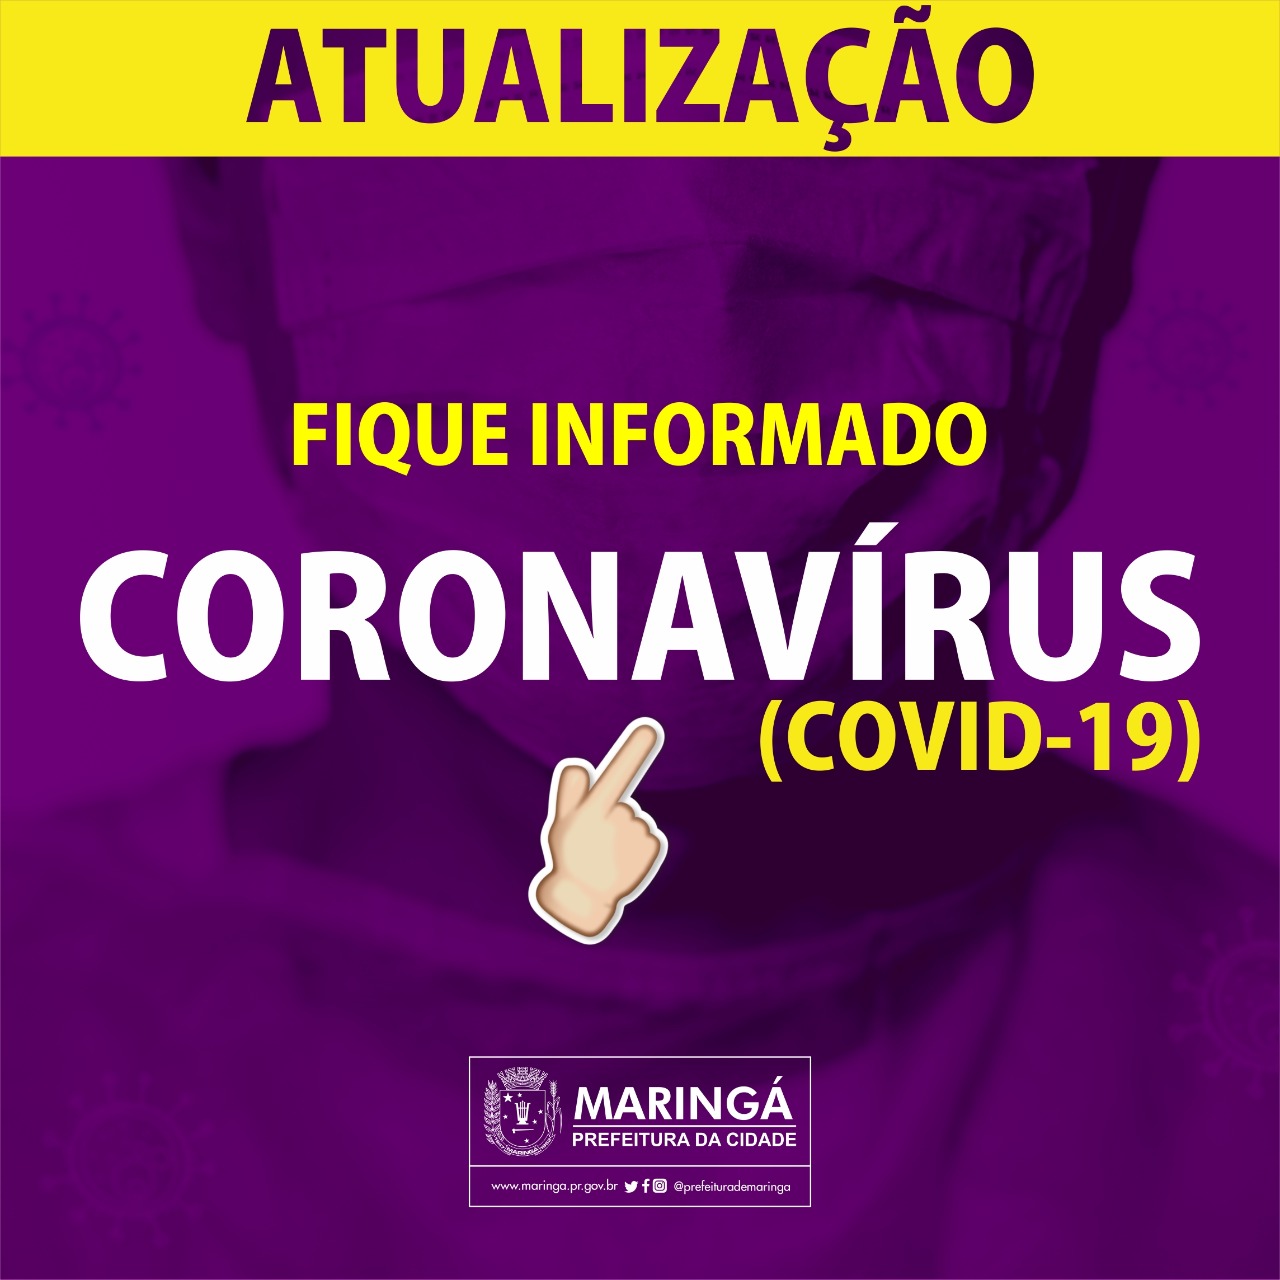 Fique por dentro das medidas de prevenção ao coronavírus em Maringá